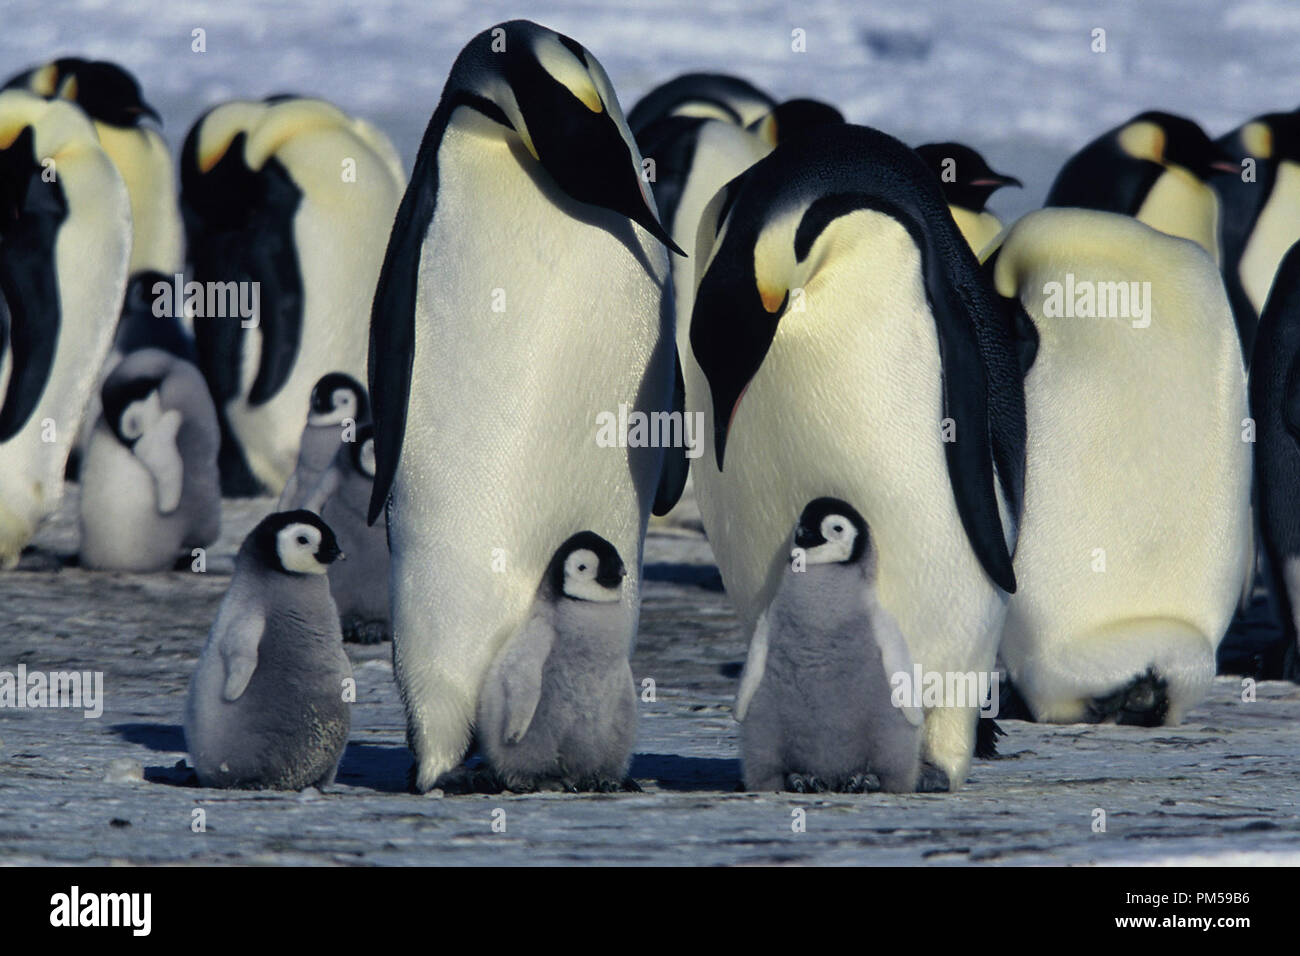 Film Still / Werbung noch von 'March der Pinguine' 2005 © 2005 National Geographic Datei Referenz # 30736226 THA nur für redaktionelle Verwendung - Alle Rechte vorbehalten Stockfoto